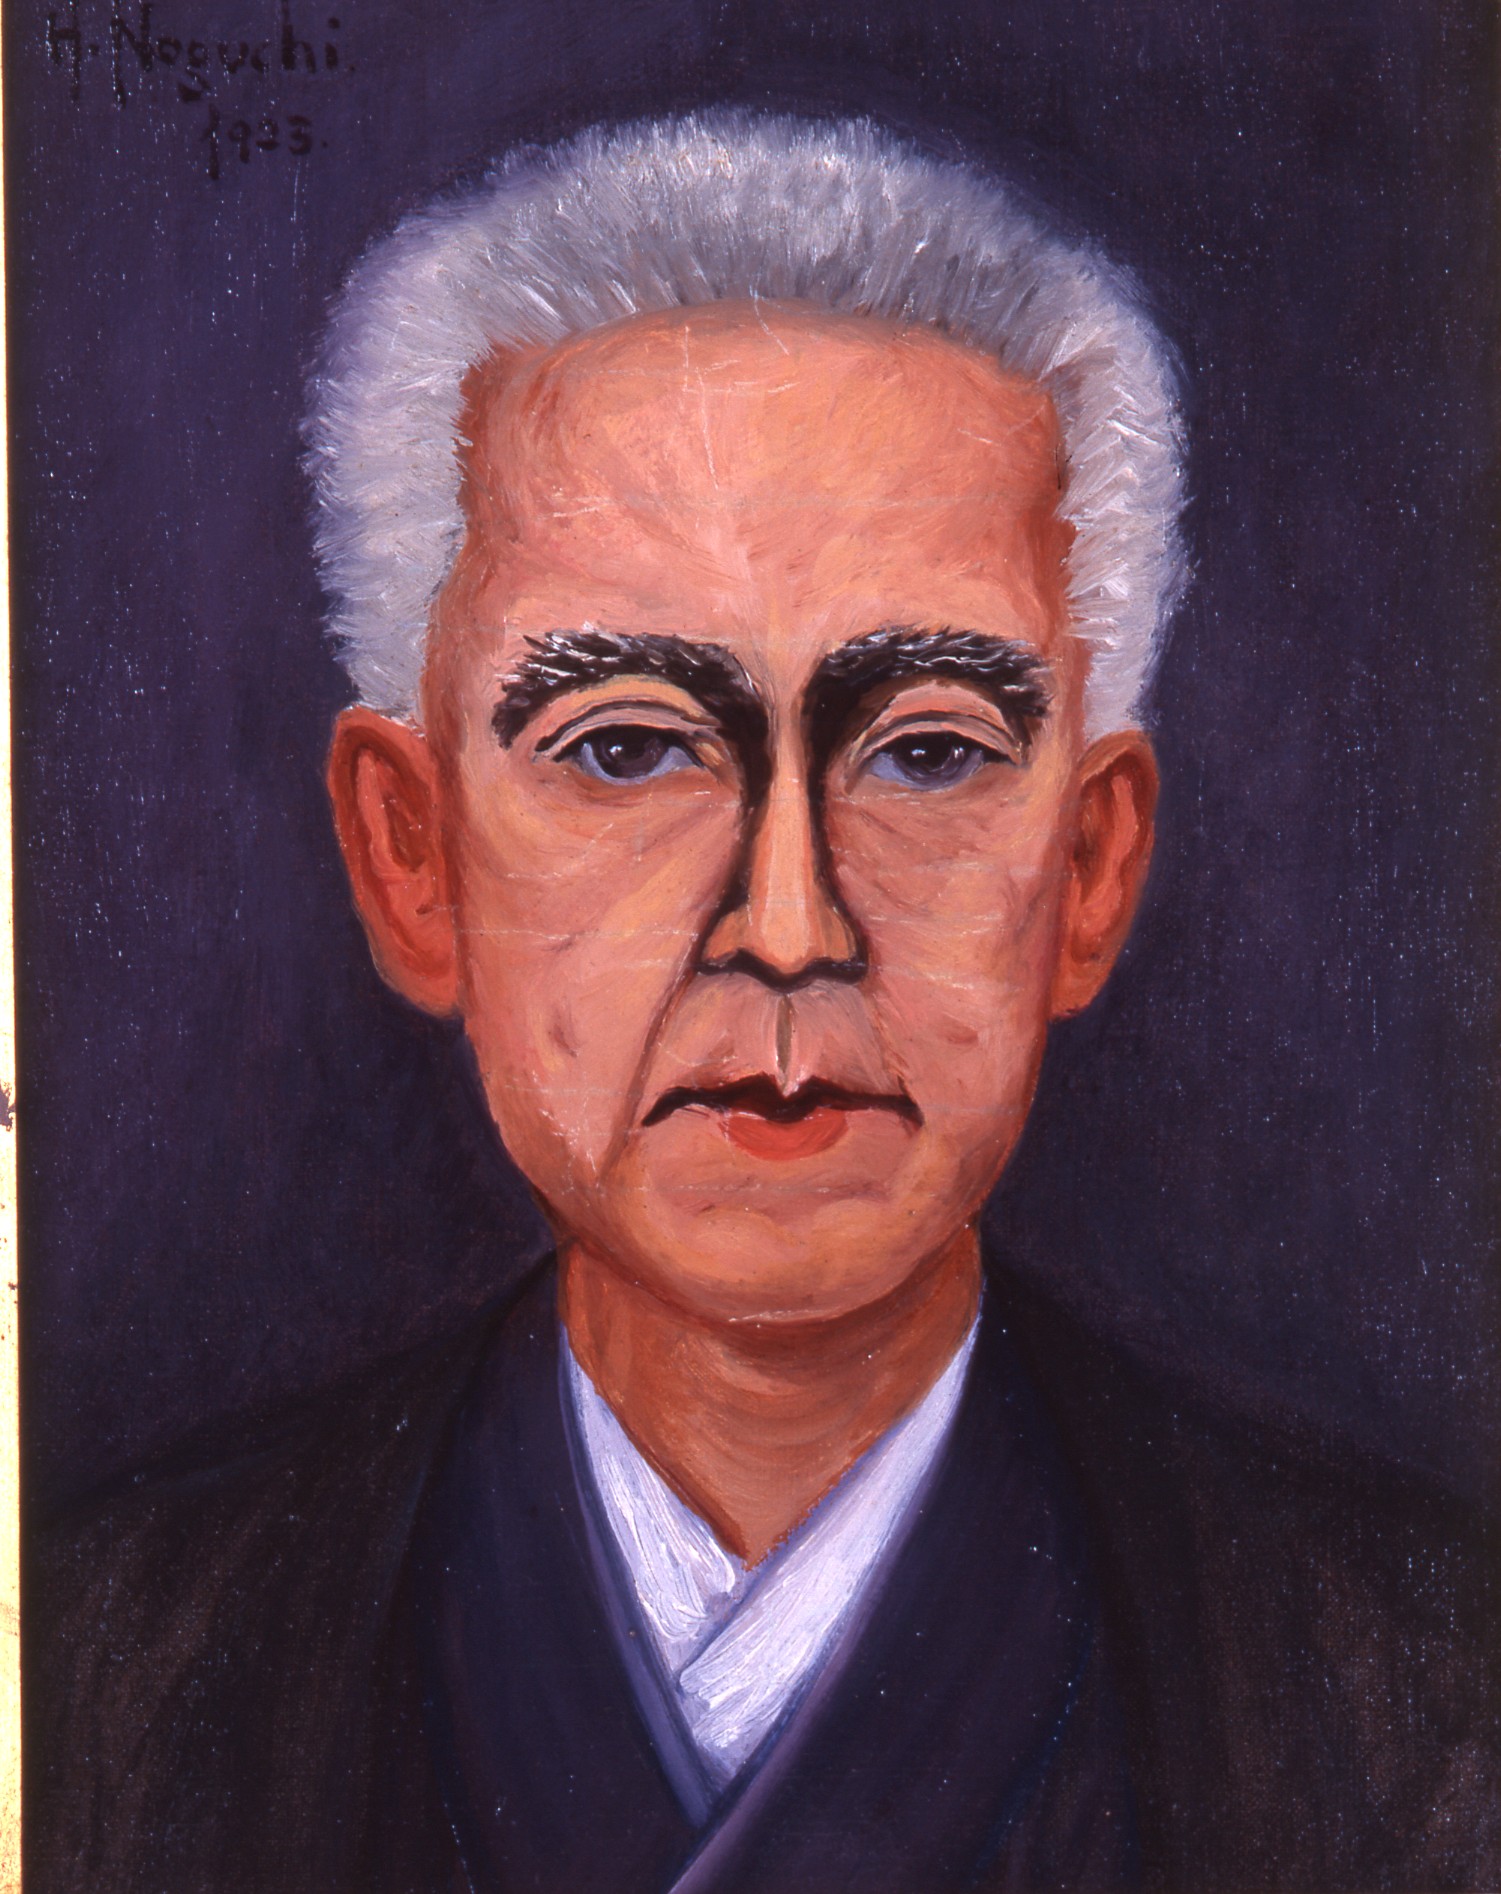 野口英世博士が描いた小林栄先生の肖像画